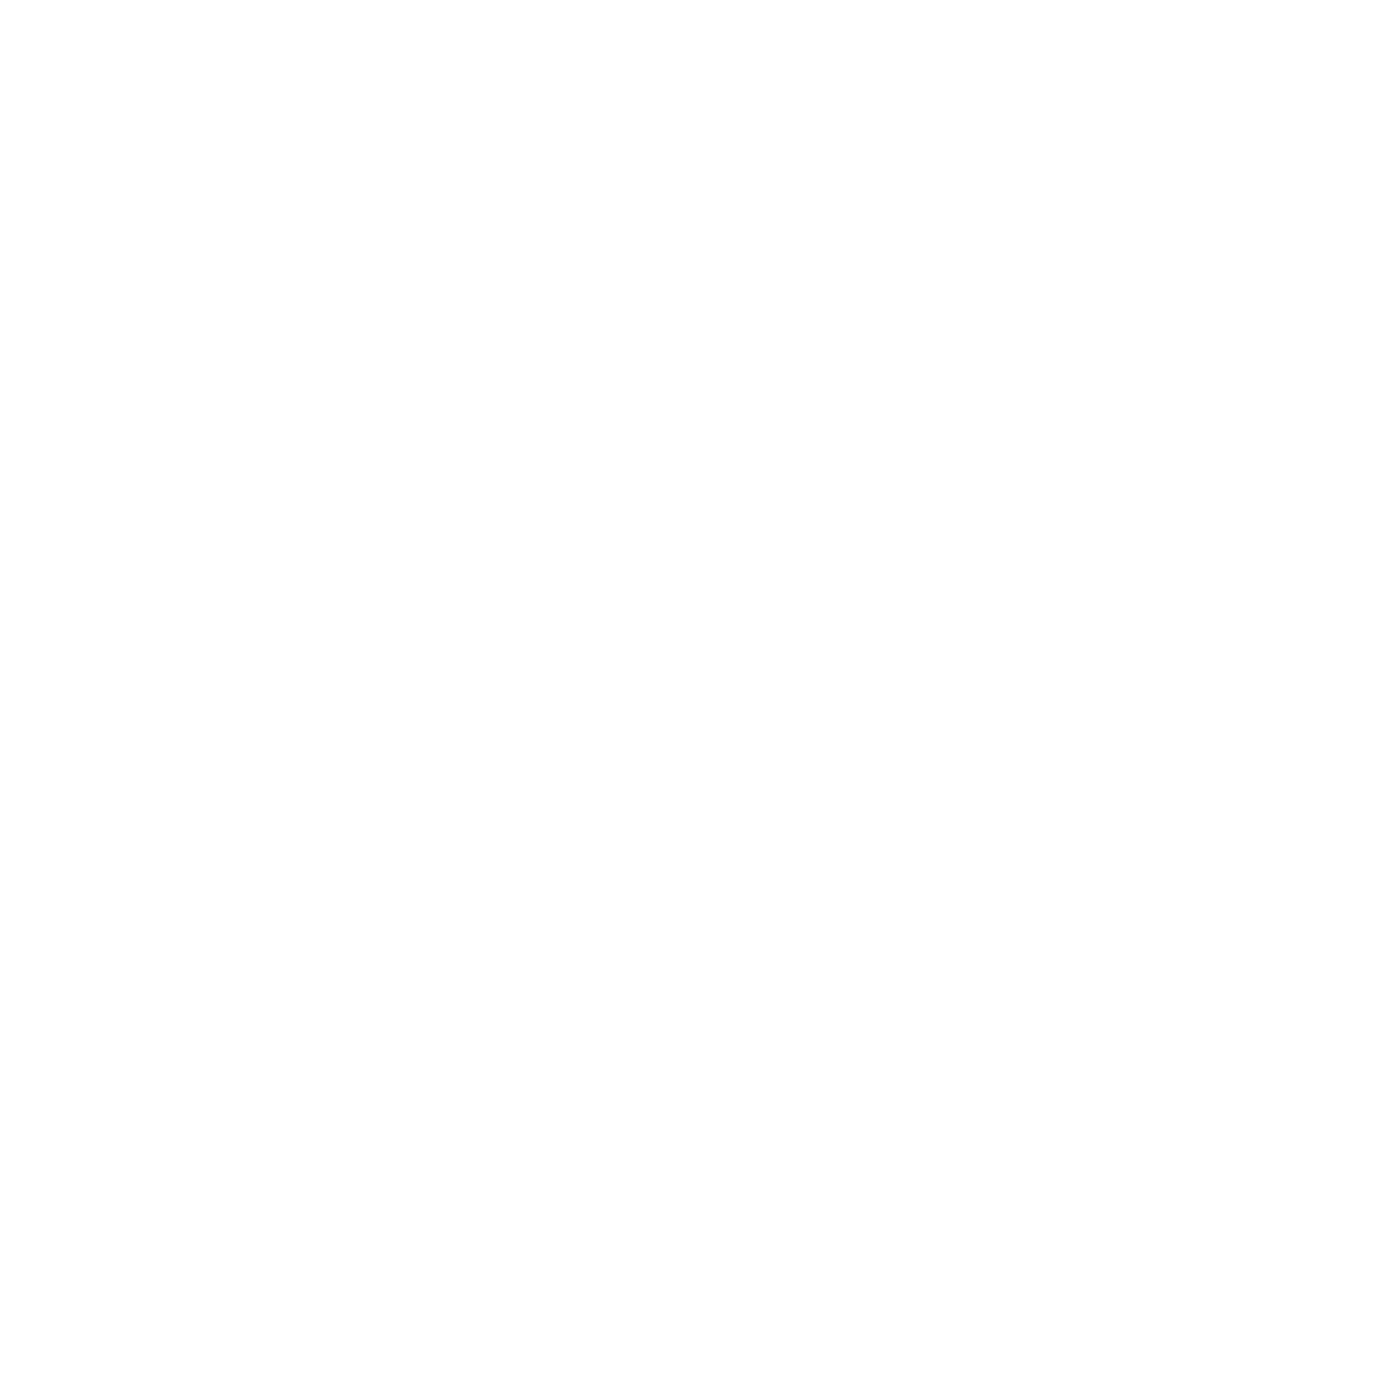 ufaname - HacksawGaming